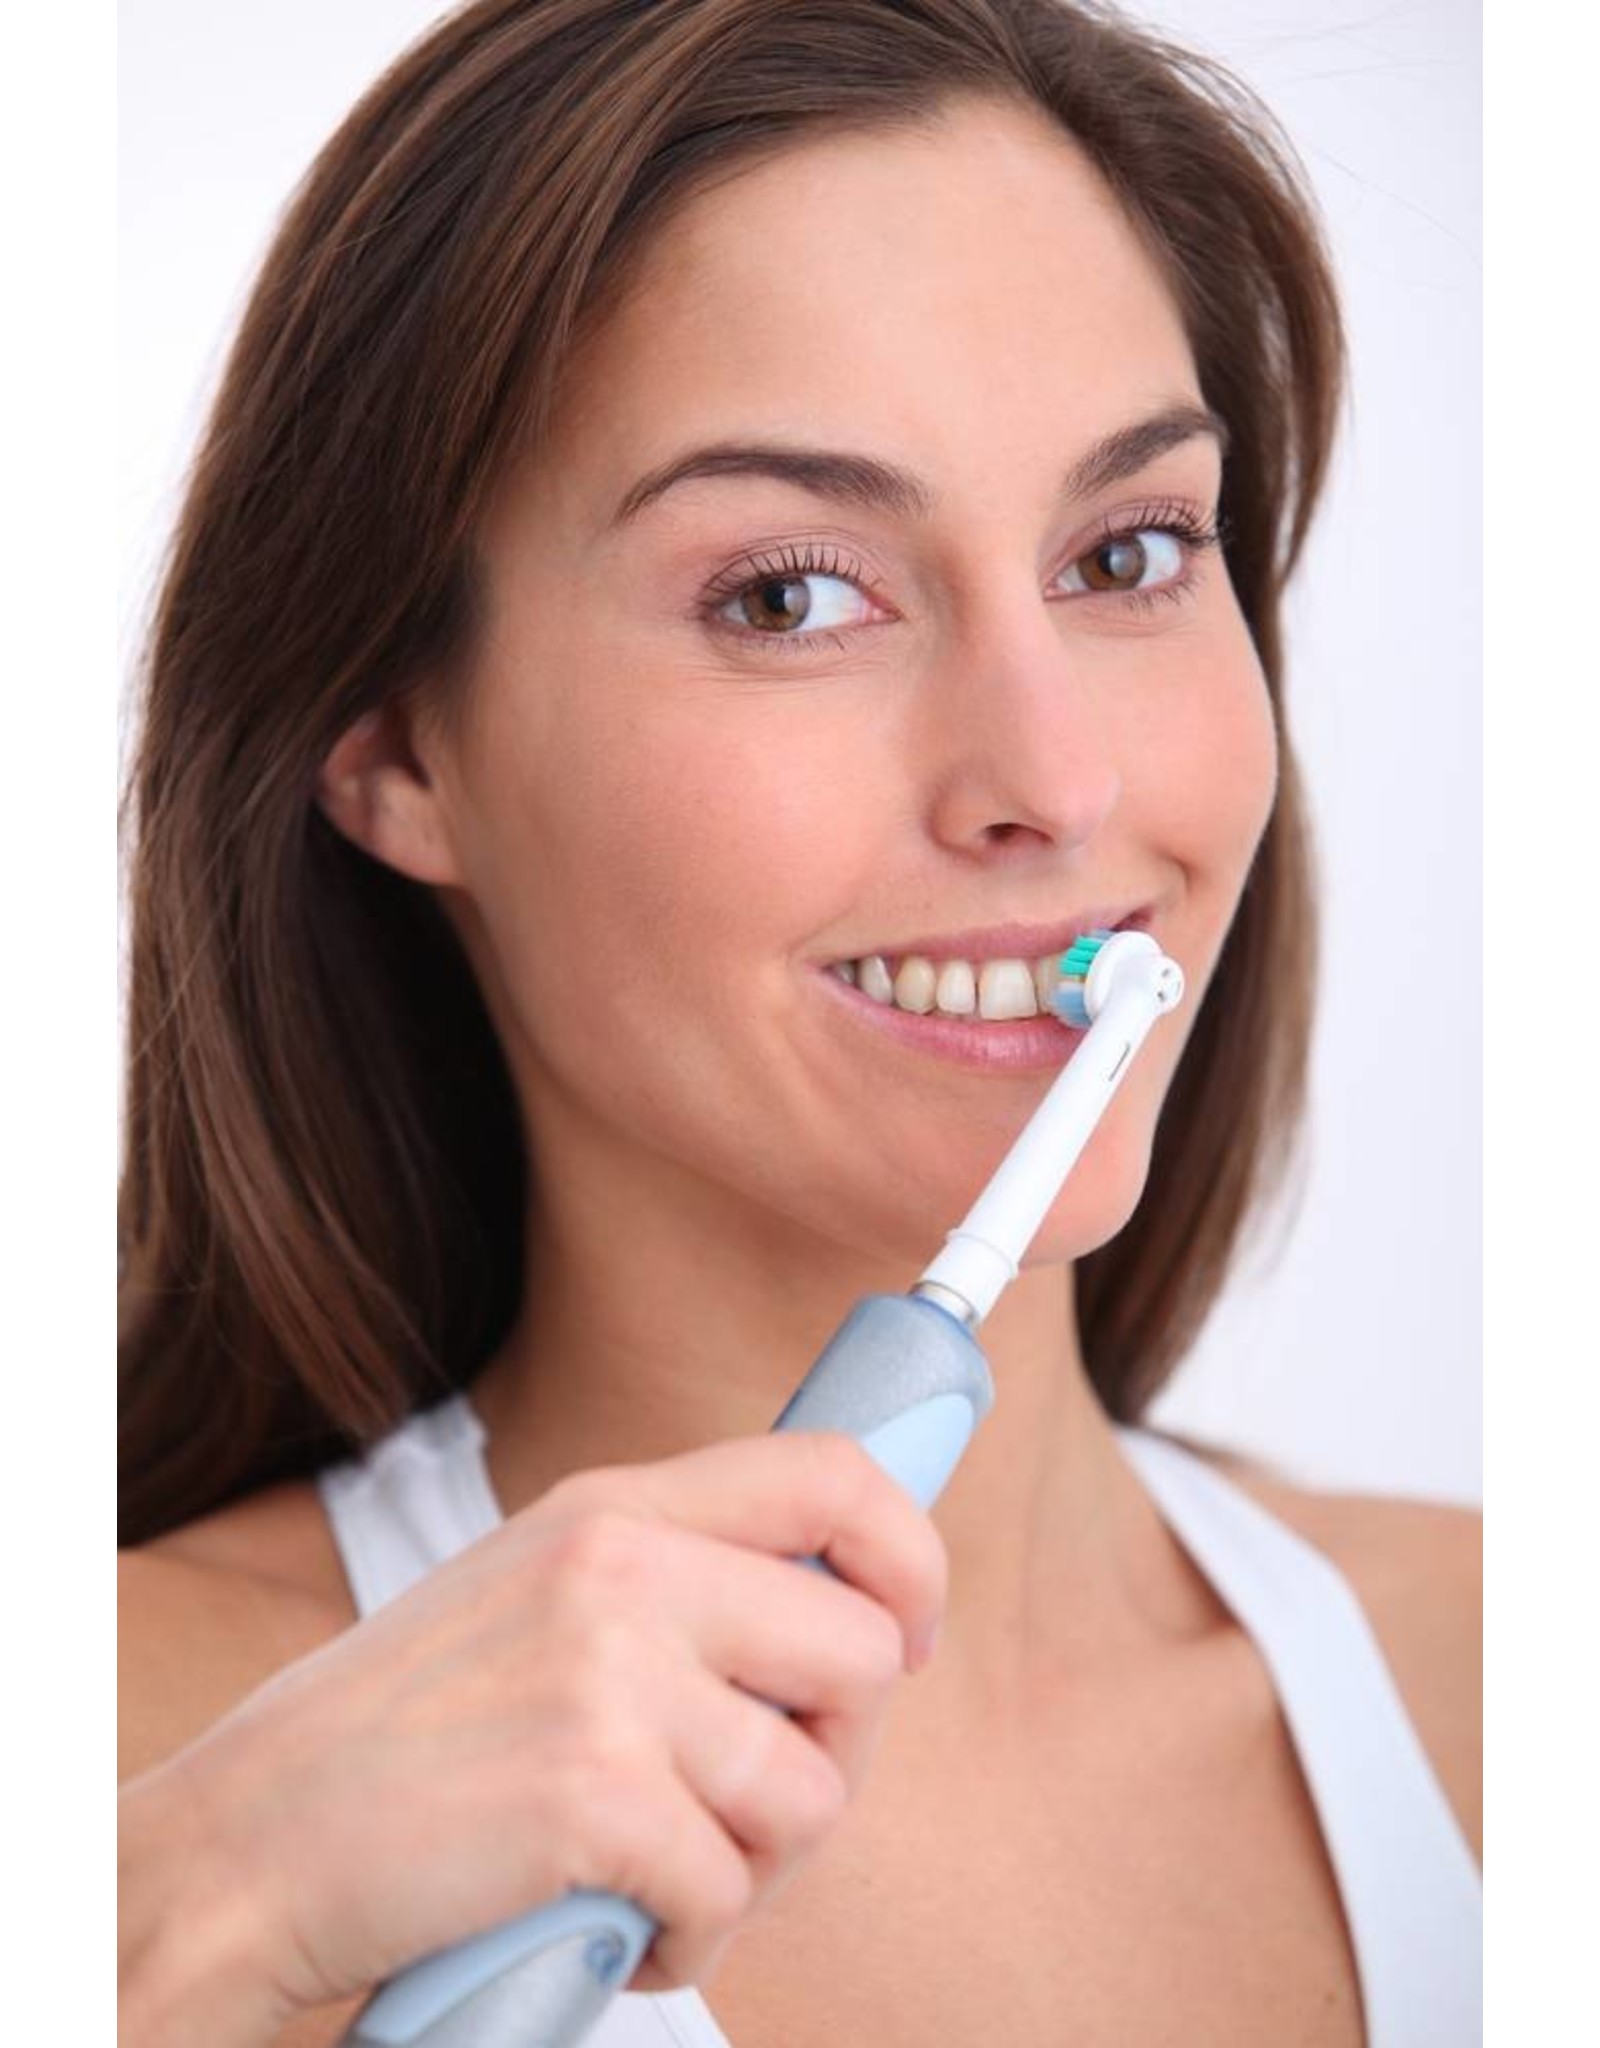 16 Bürstenköpfe für elektrische Oral-B-Zahnbürsten (kostenloser Versand)